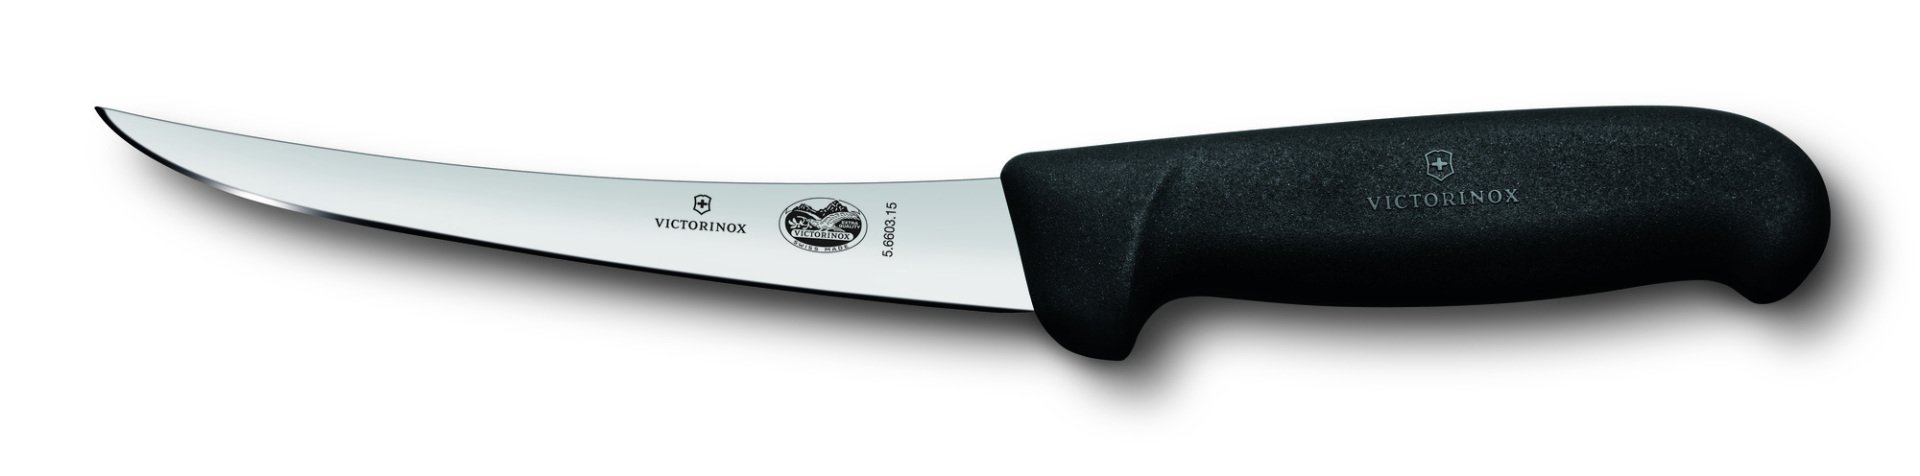 Victorinox Sıyırma Kıvrık Bıçak 15 cm Kemiksiz Bıçağı 7.6603.15 Fibrox